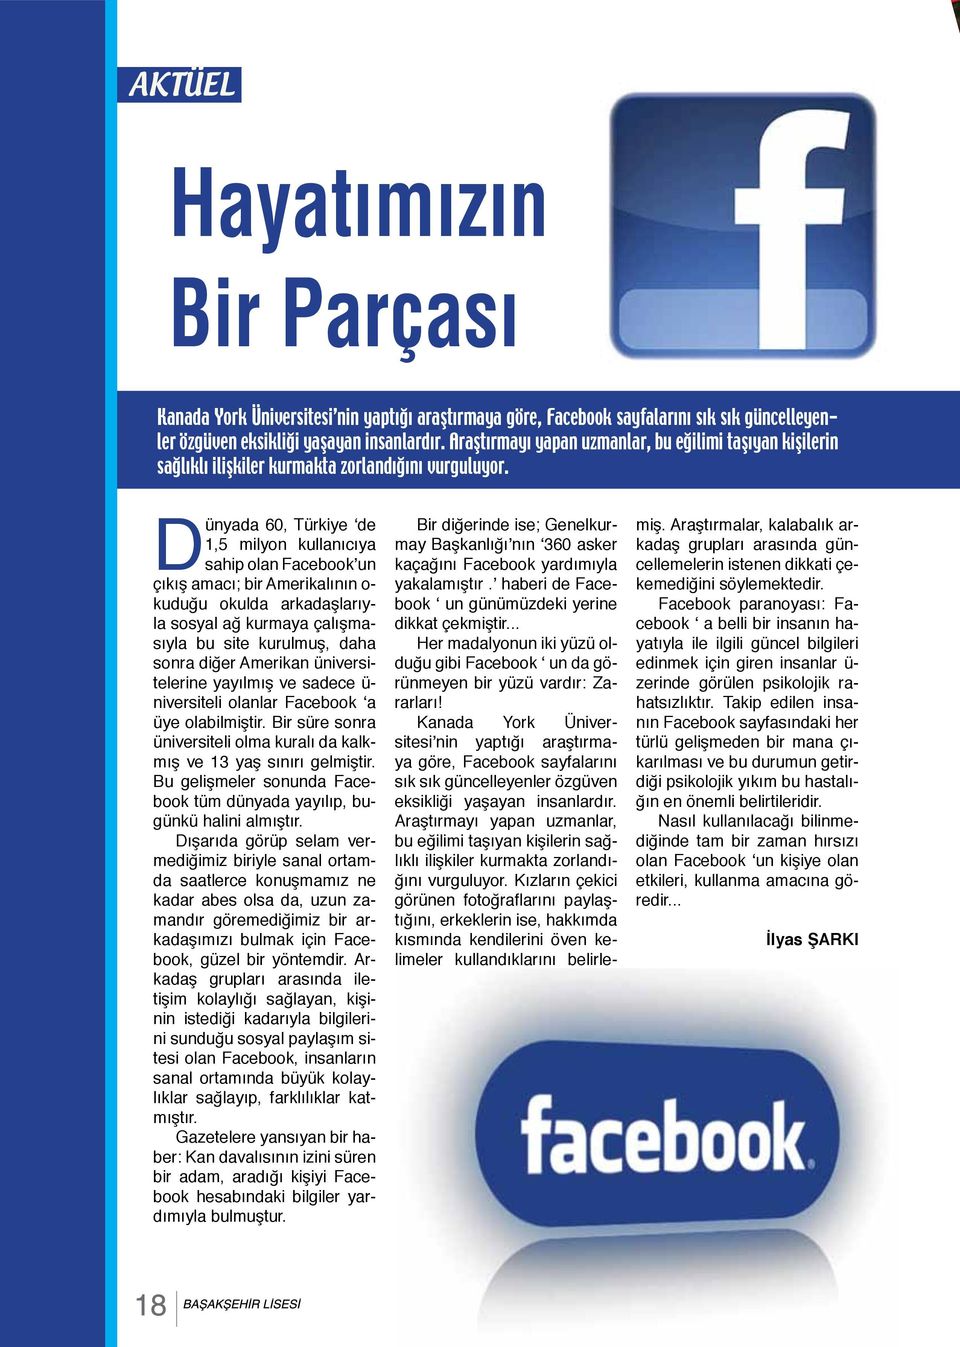 Dünyada 60, Türkiye de 1,5 milyon kullanıcıya sahip olan Facebook un çıkış amacı; bir Amerikalının o- kuduğu okulda arkadaşlarıyla sosyal ağ kurmaya çalışmasıyla bu site kurulmuş, daha sonra diğer